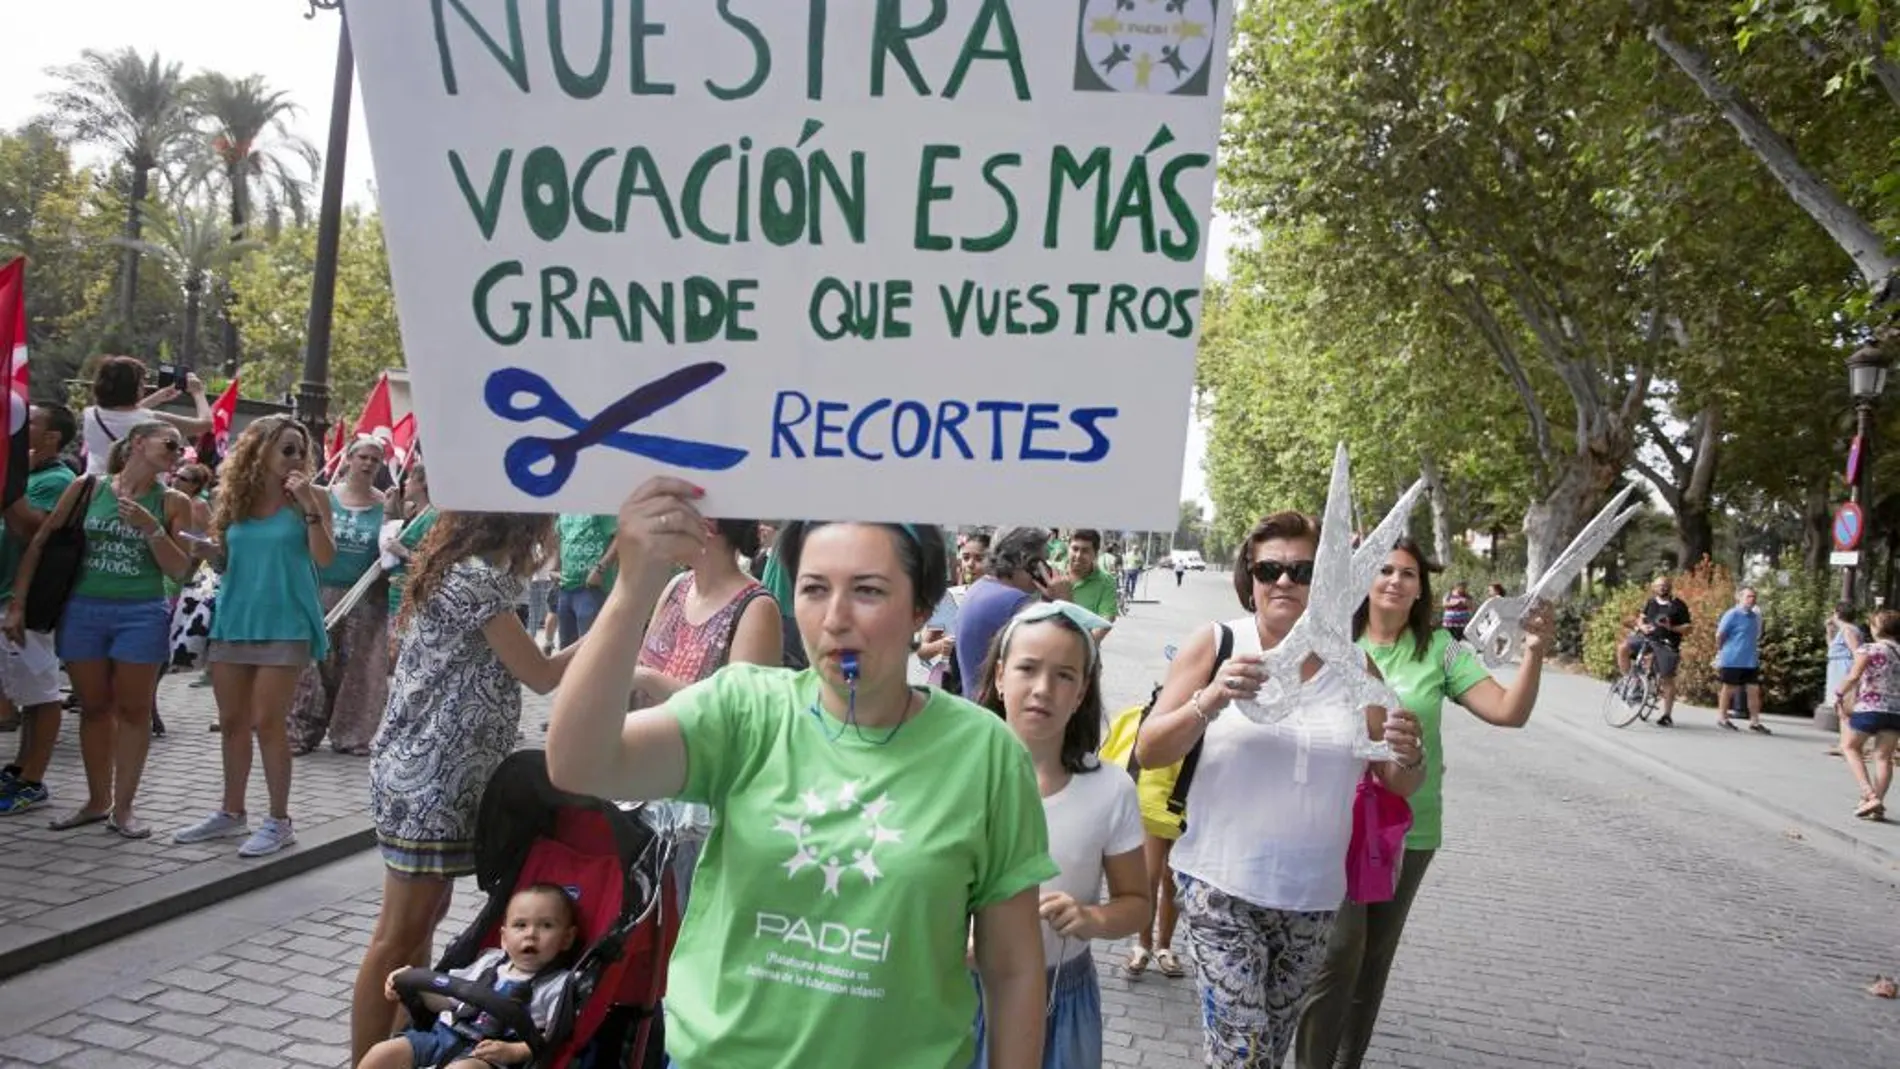 Manifestación de profesores interinos en Sevilla por los recortes